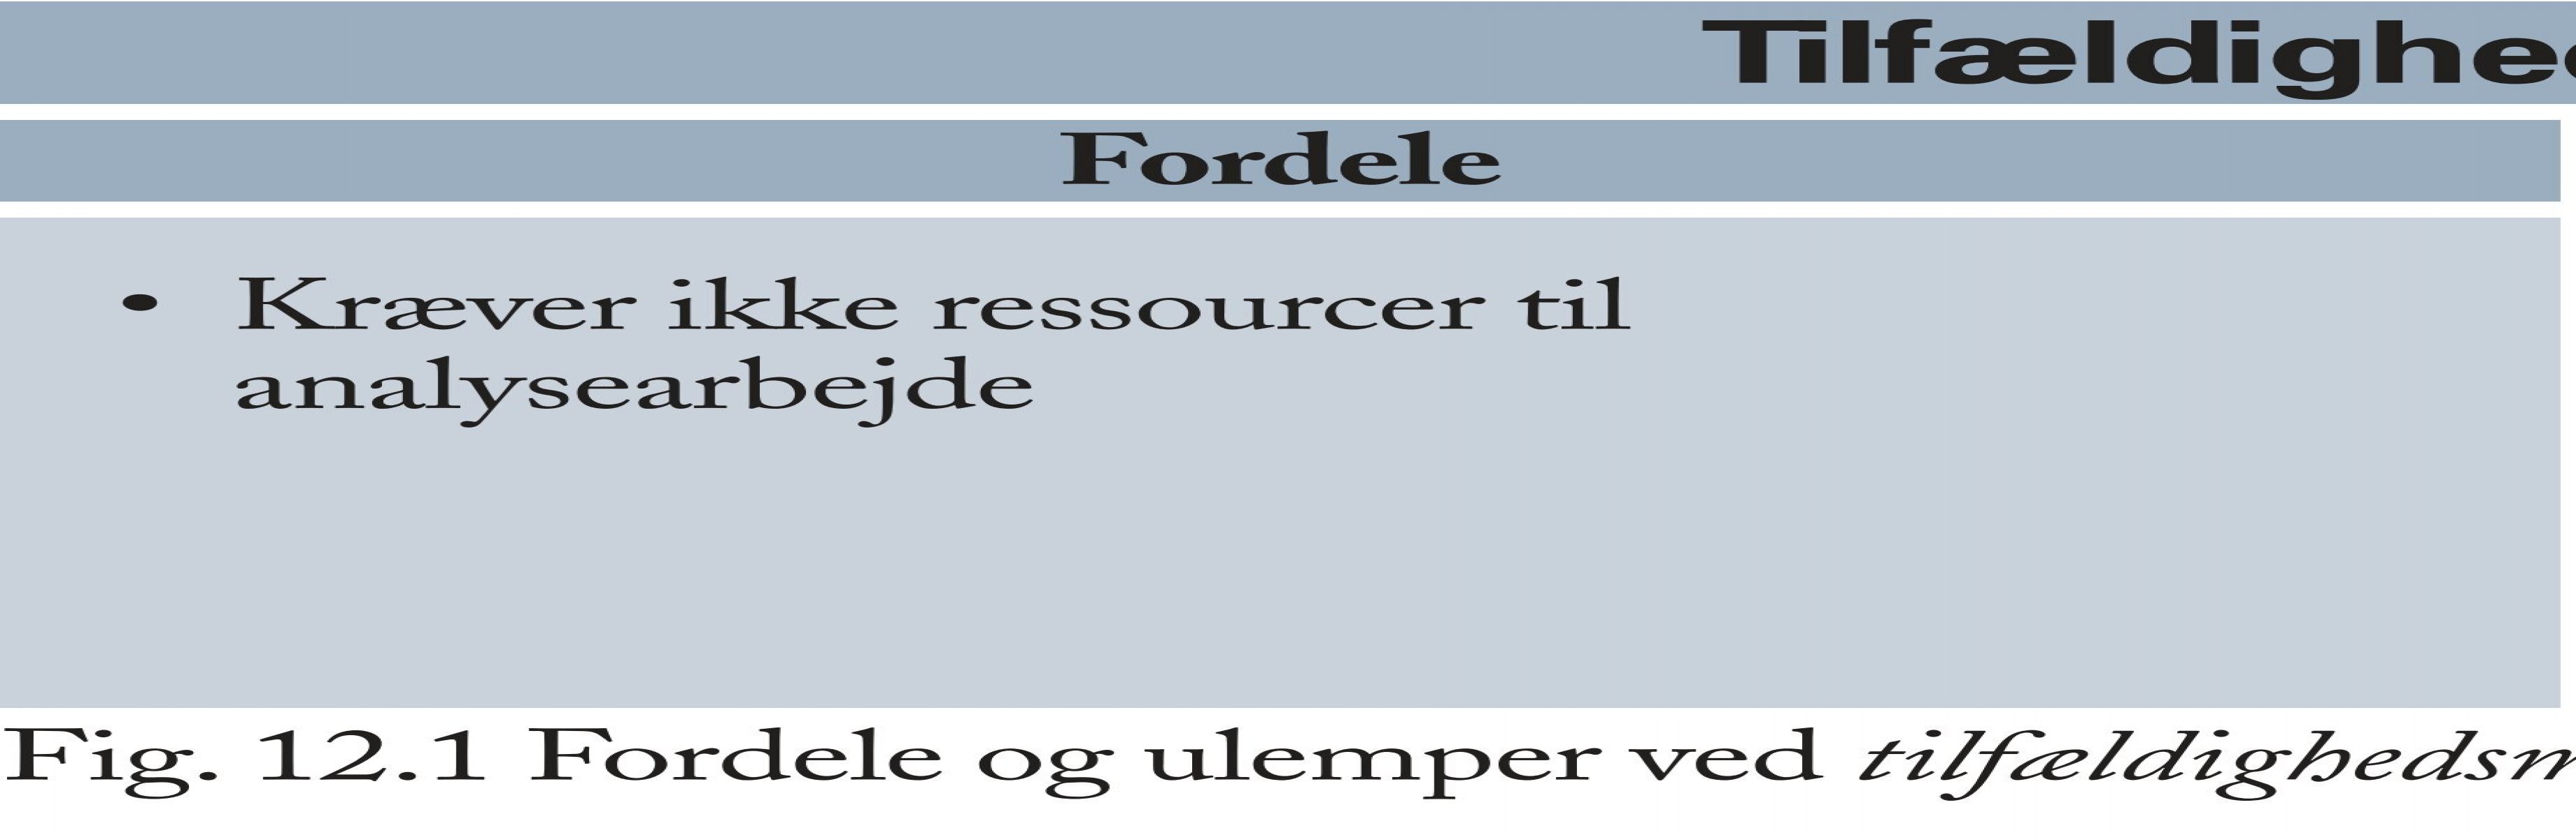 Alle slags Underinddel forord figurer til Trojkas Afsætning niveau A, bind 2 - trojka.dk